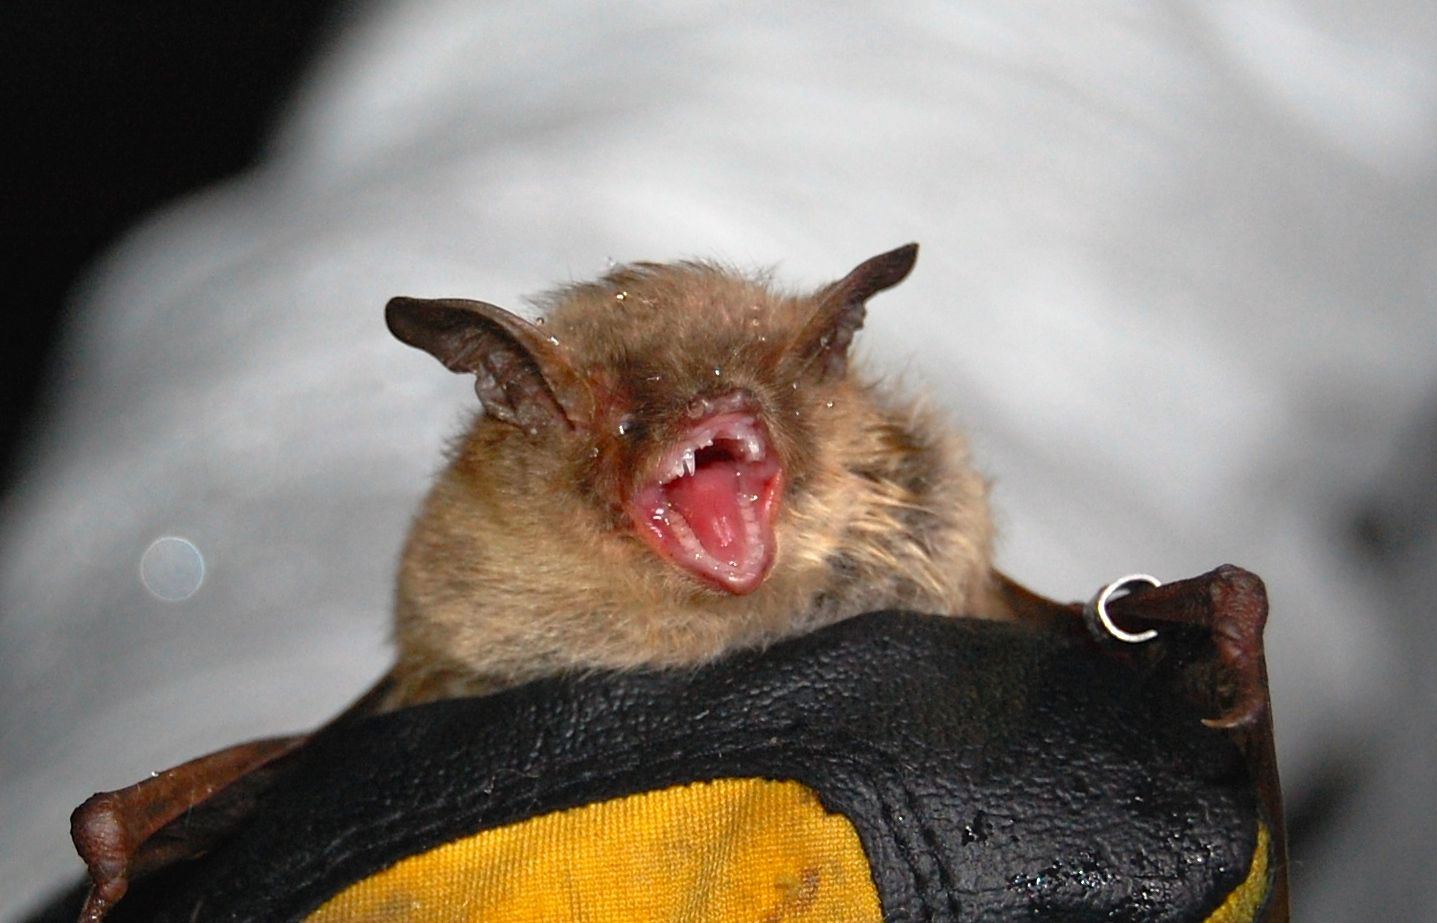 Happy Bat Appreciation Day!